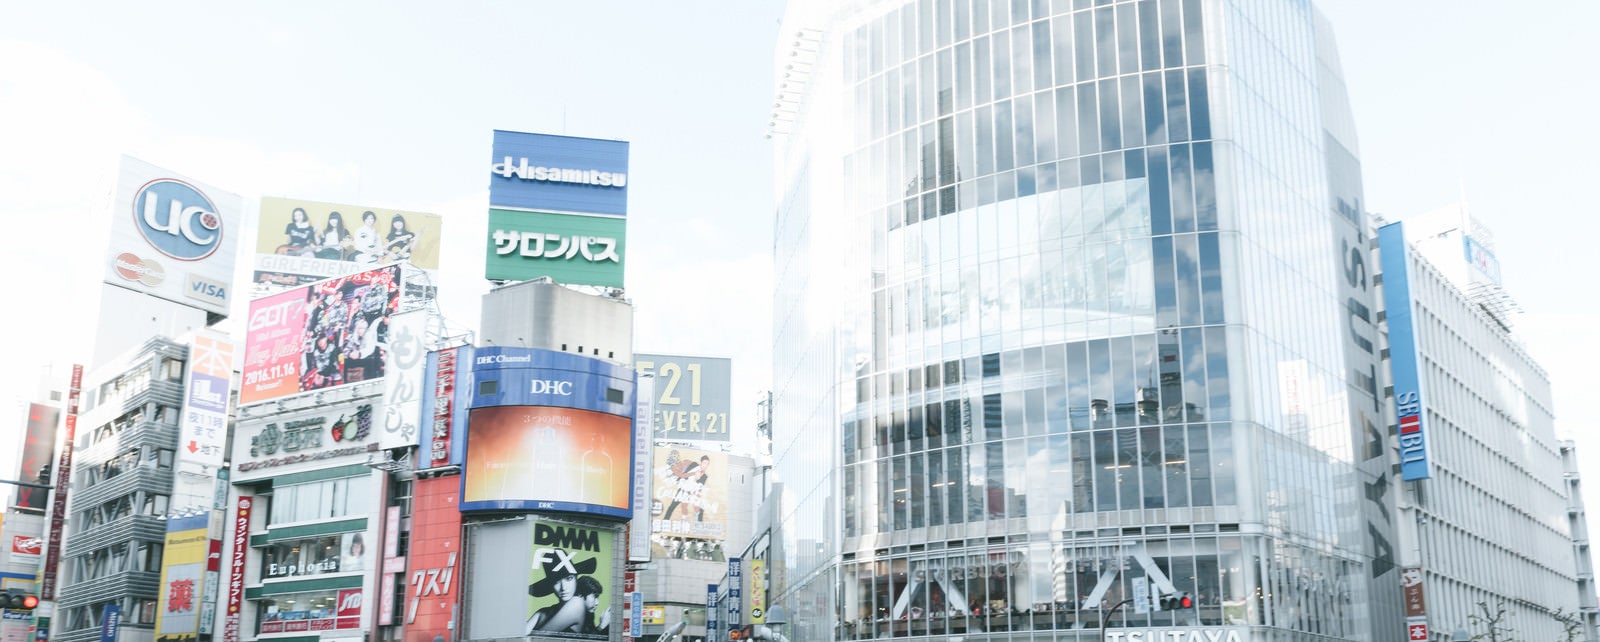 「渋谷駅前の様子」の写真